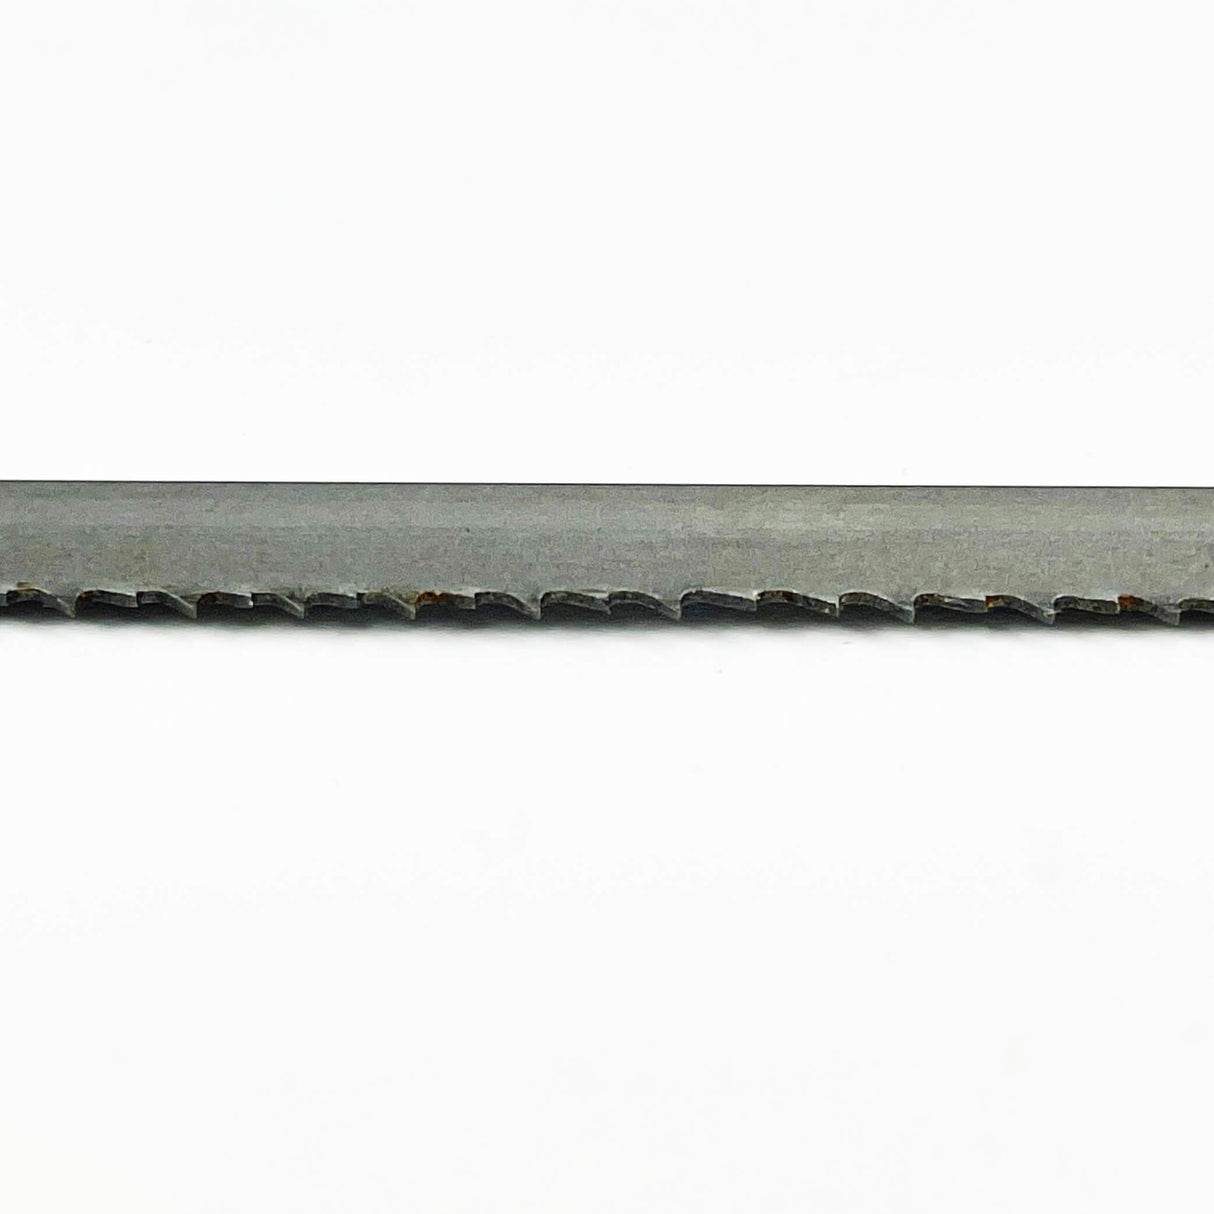 Sega a nastro bimetallica COBALT M42 da 1.985 mm di lunghezza x 20 mm di larghezza – Confezione da 2 lame